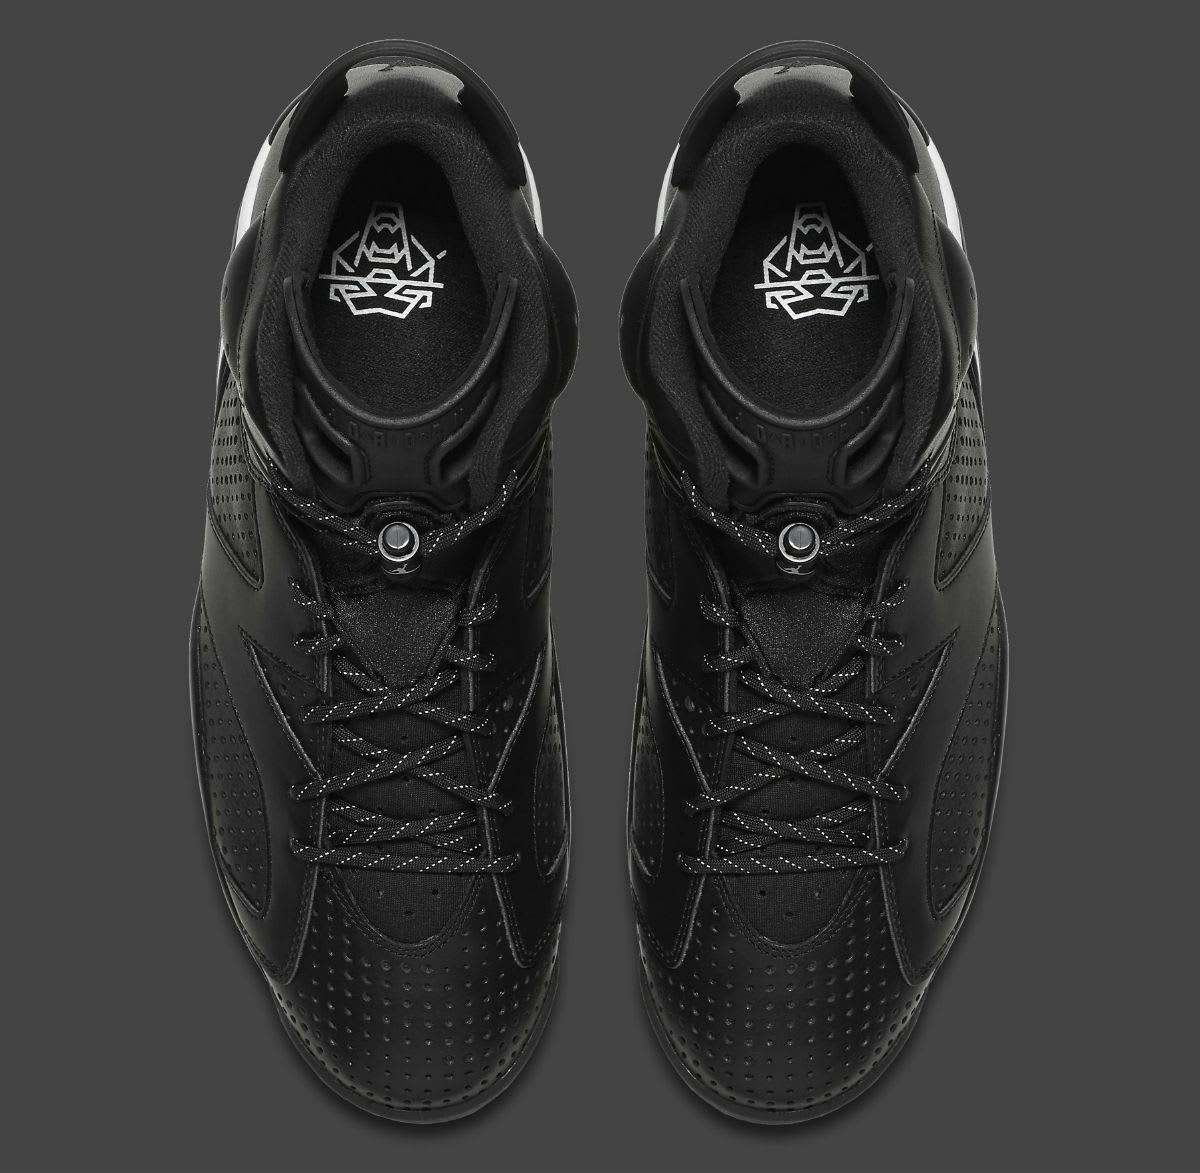 Air Jordan 6 Black Cat Release Date Top 384664-020